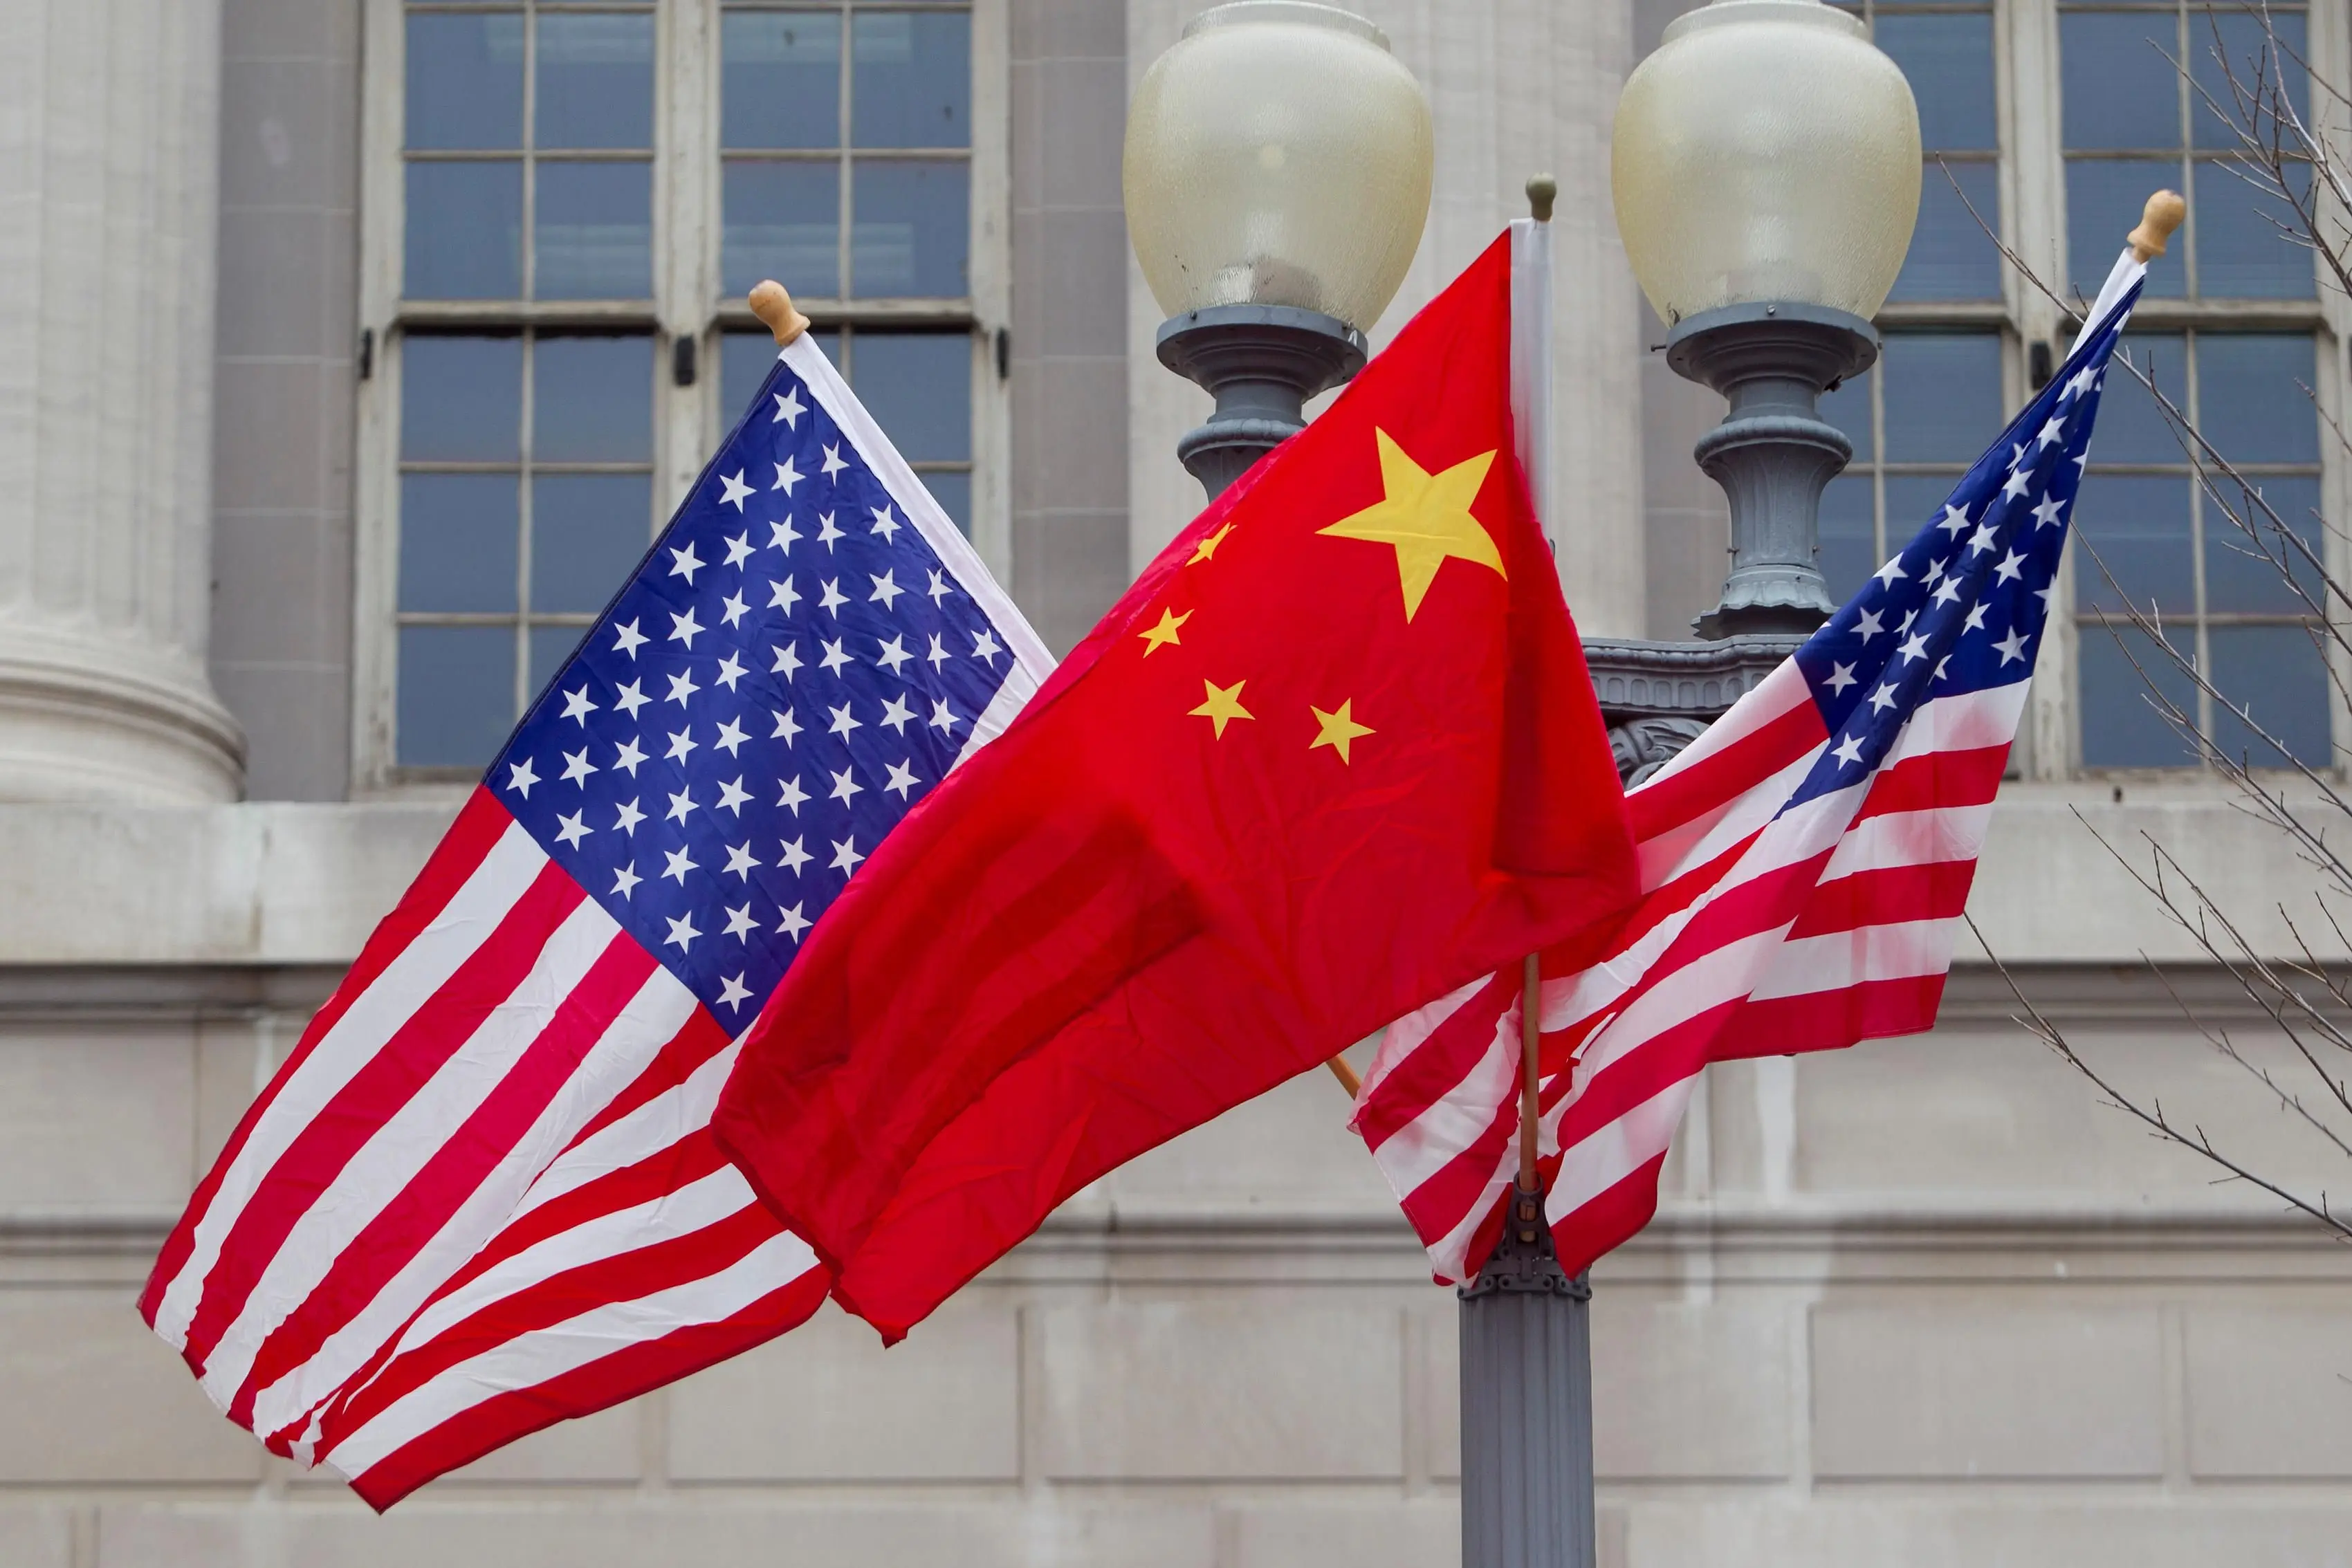 Яка країна першою стала найбільшою економікою у світі в протистоянні між США та Китаєм?